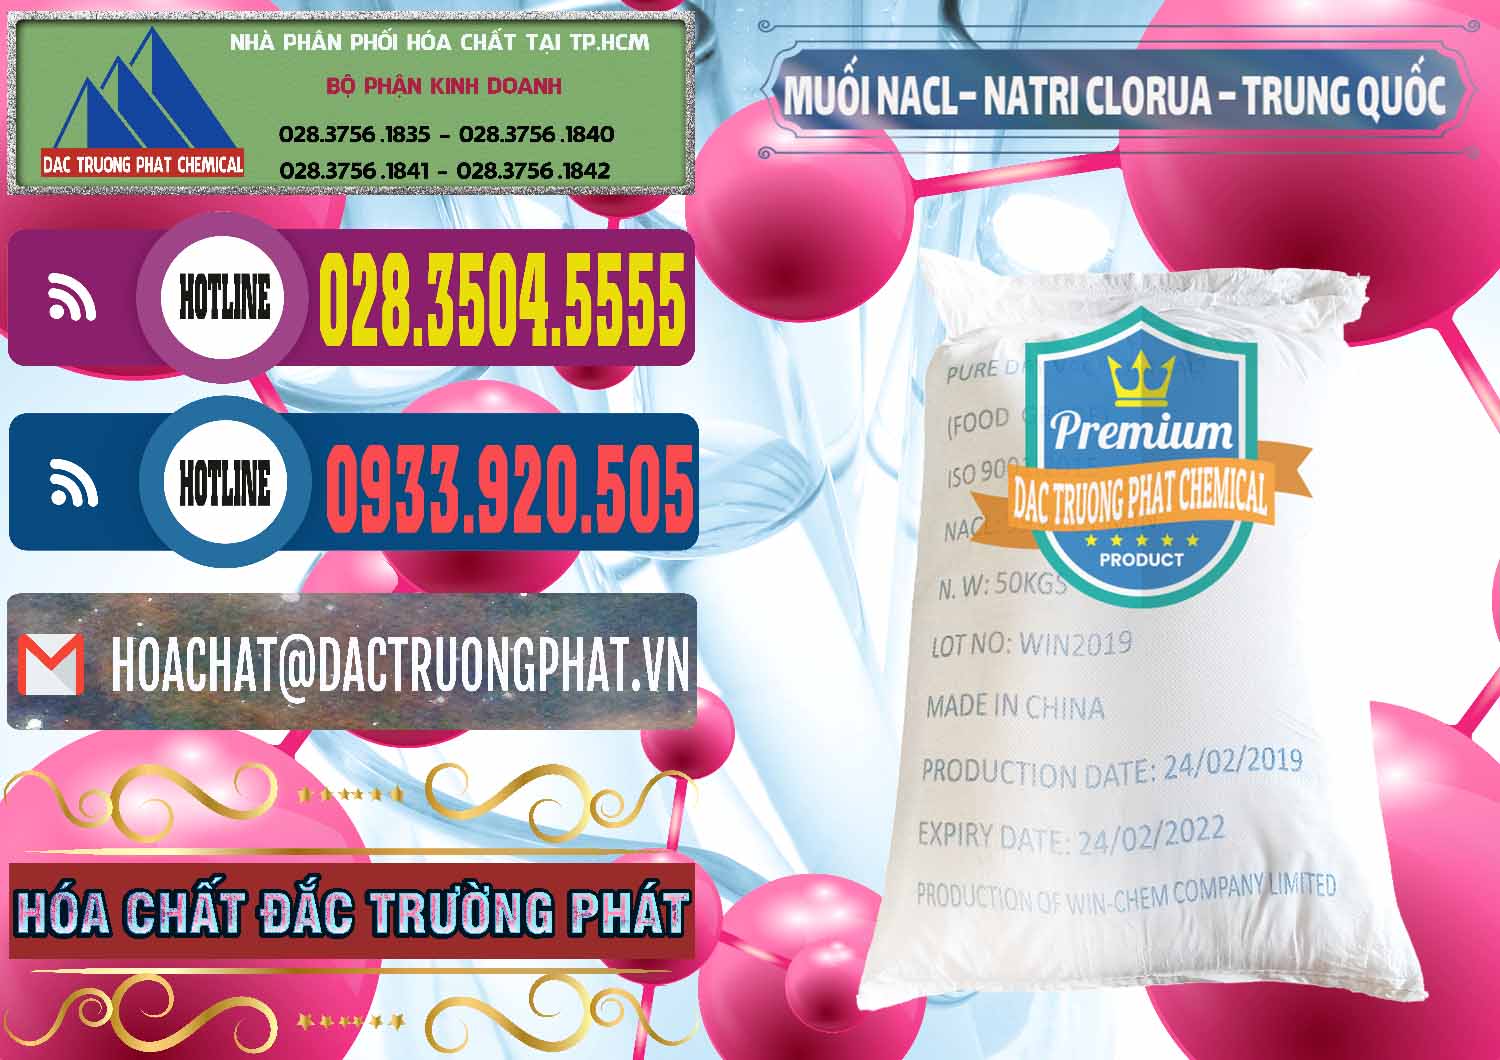 Công ty chuyên bán ( cung cấp ) Muối NaCL – Sodium Chloride Trung Quốc China - 0097 - Cty cung cấp _ kinh doanh hóa chất tại TP.HCM - muabanhoachat.com.vn